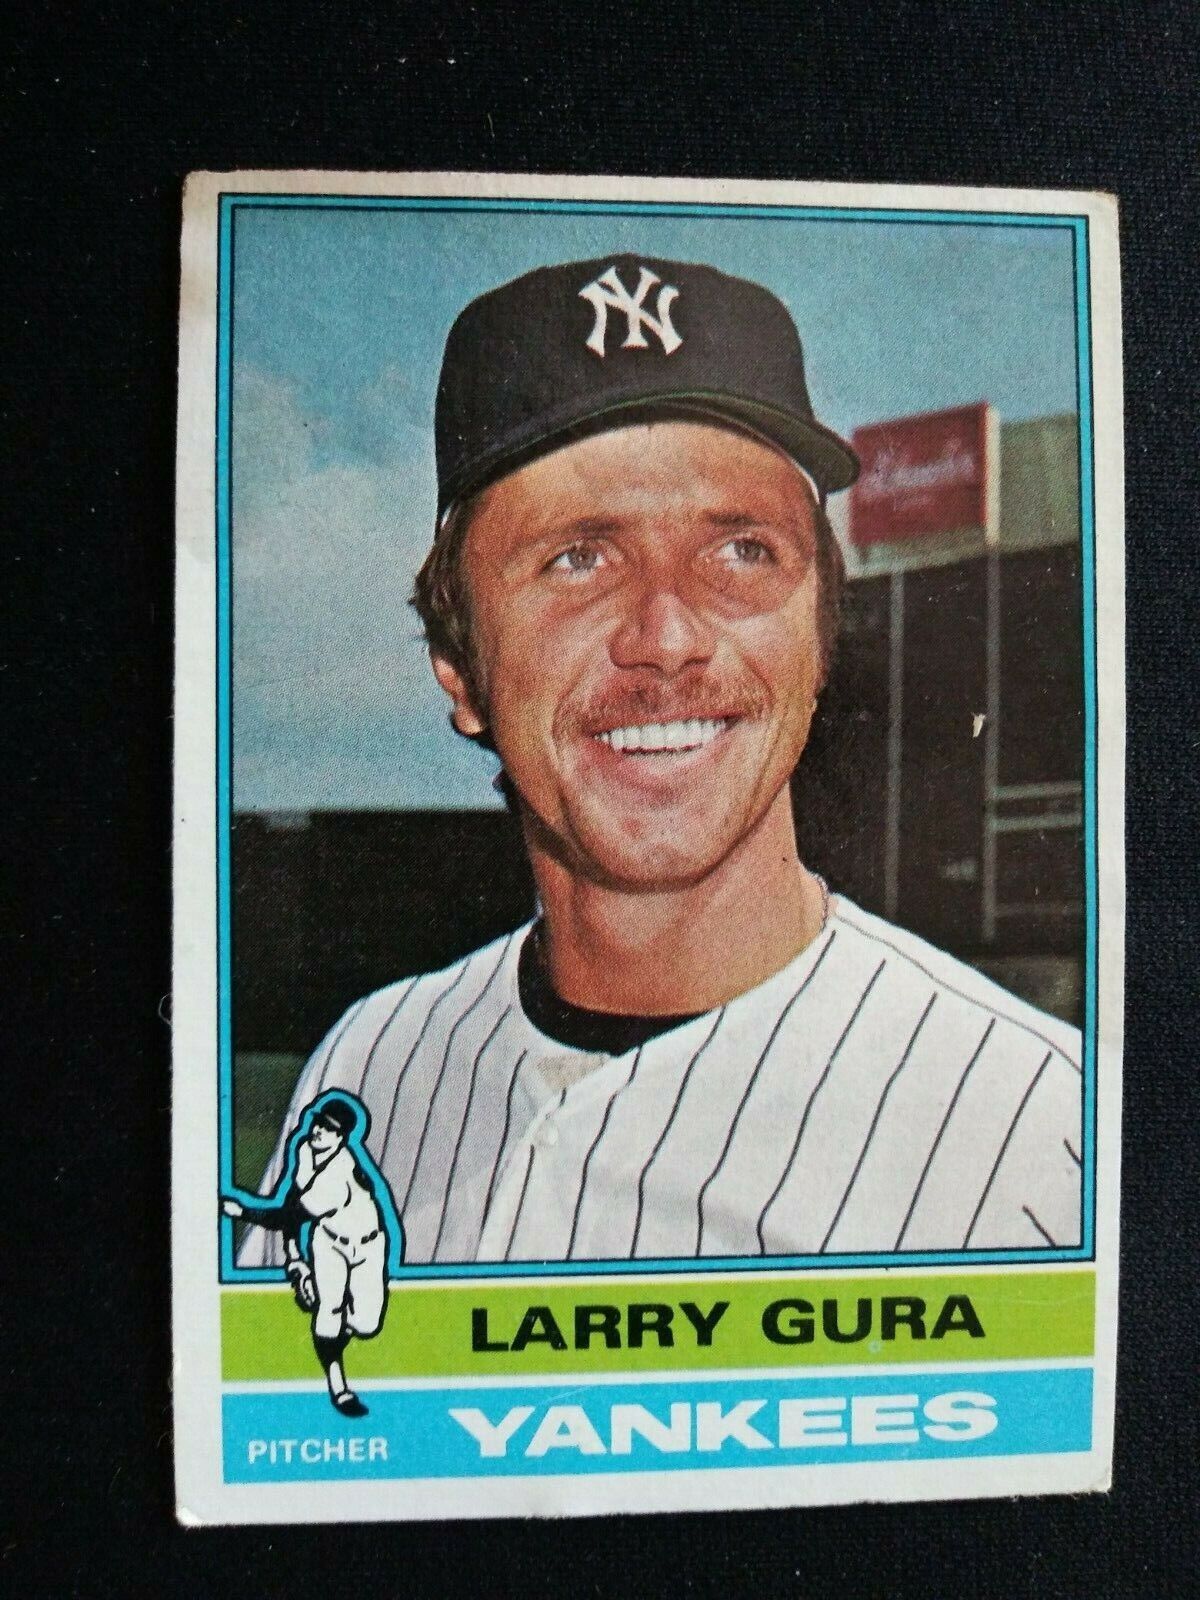 1976 Topps Baseball Card # 319 Larry Gura - New York Yankees